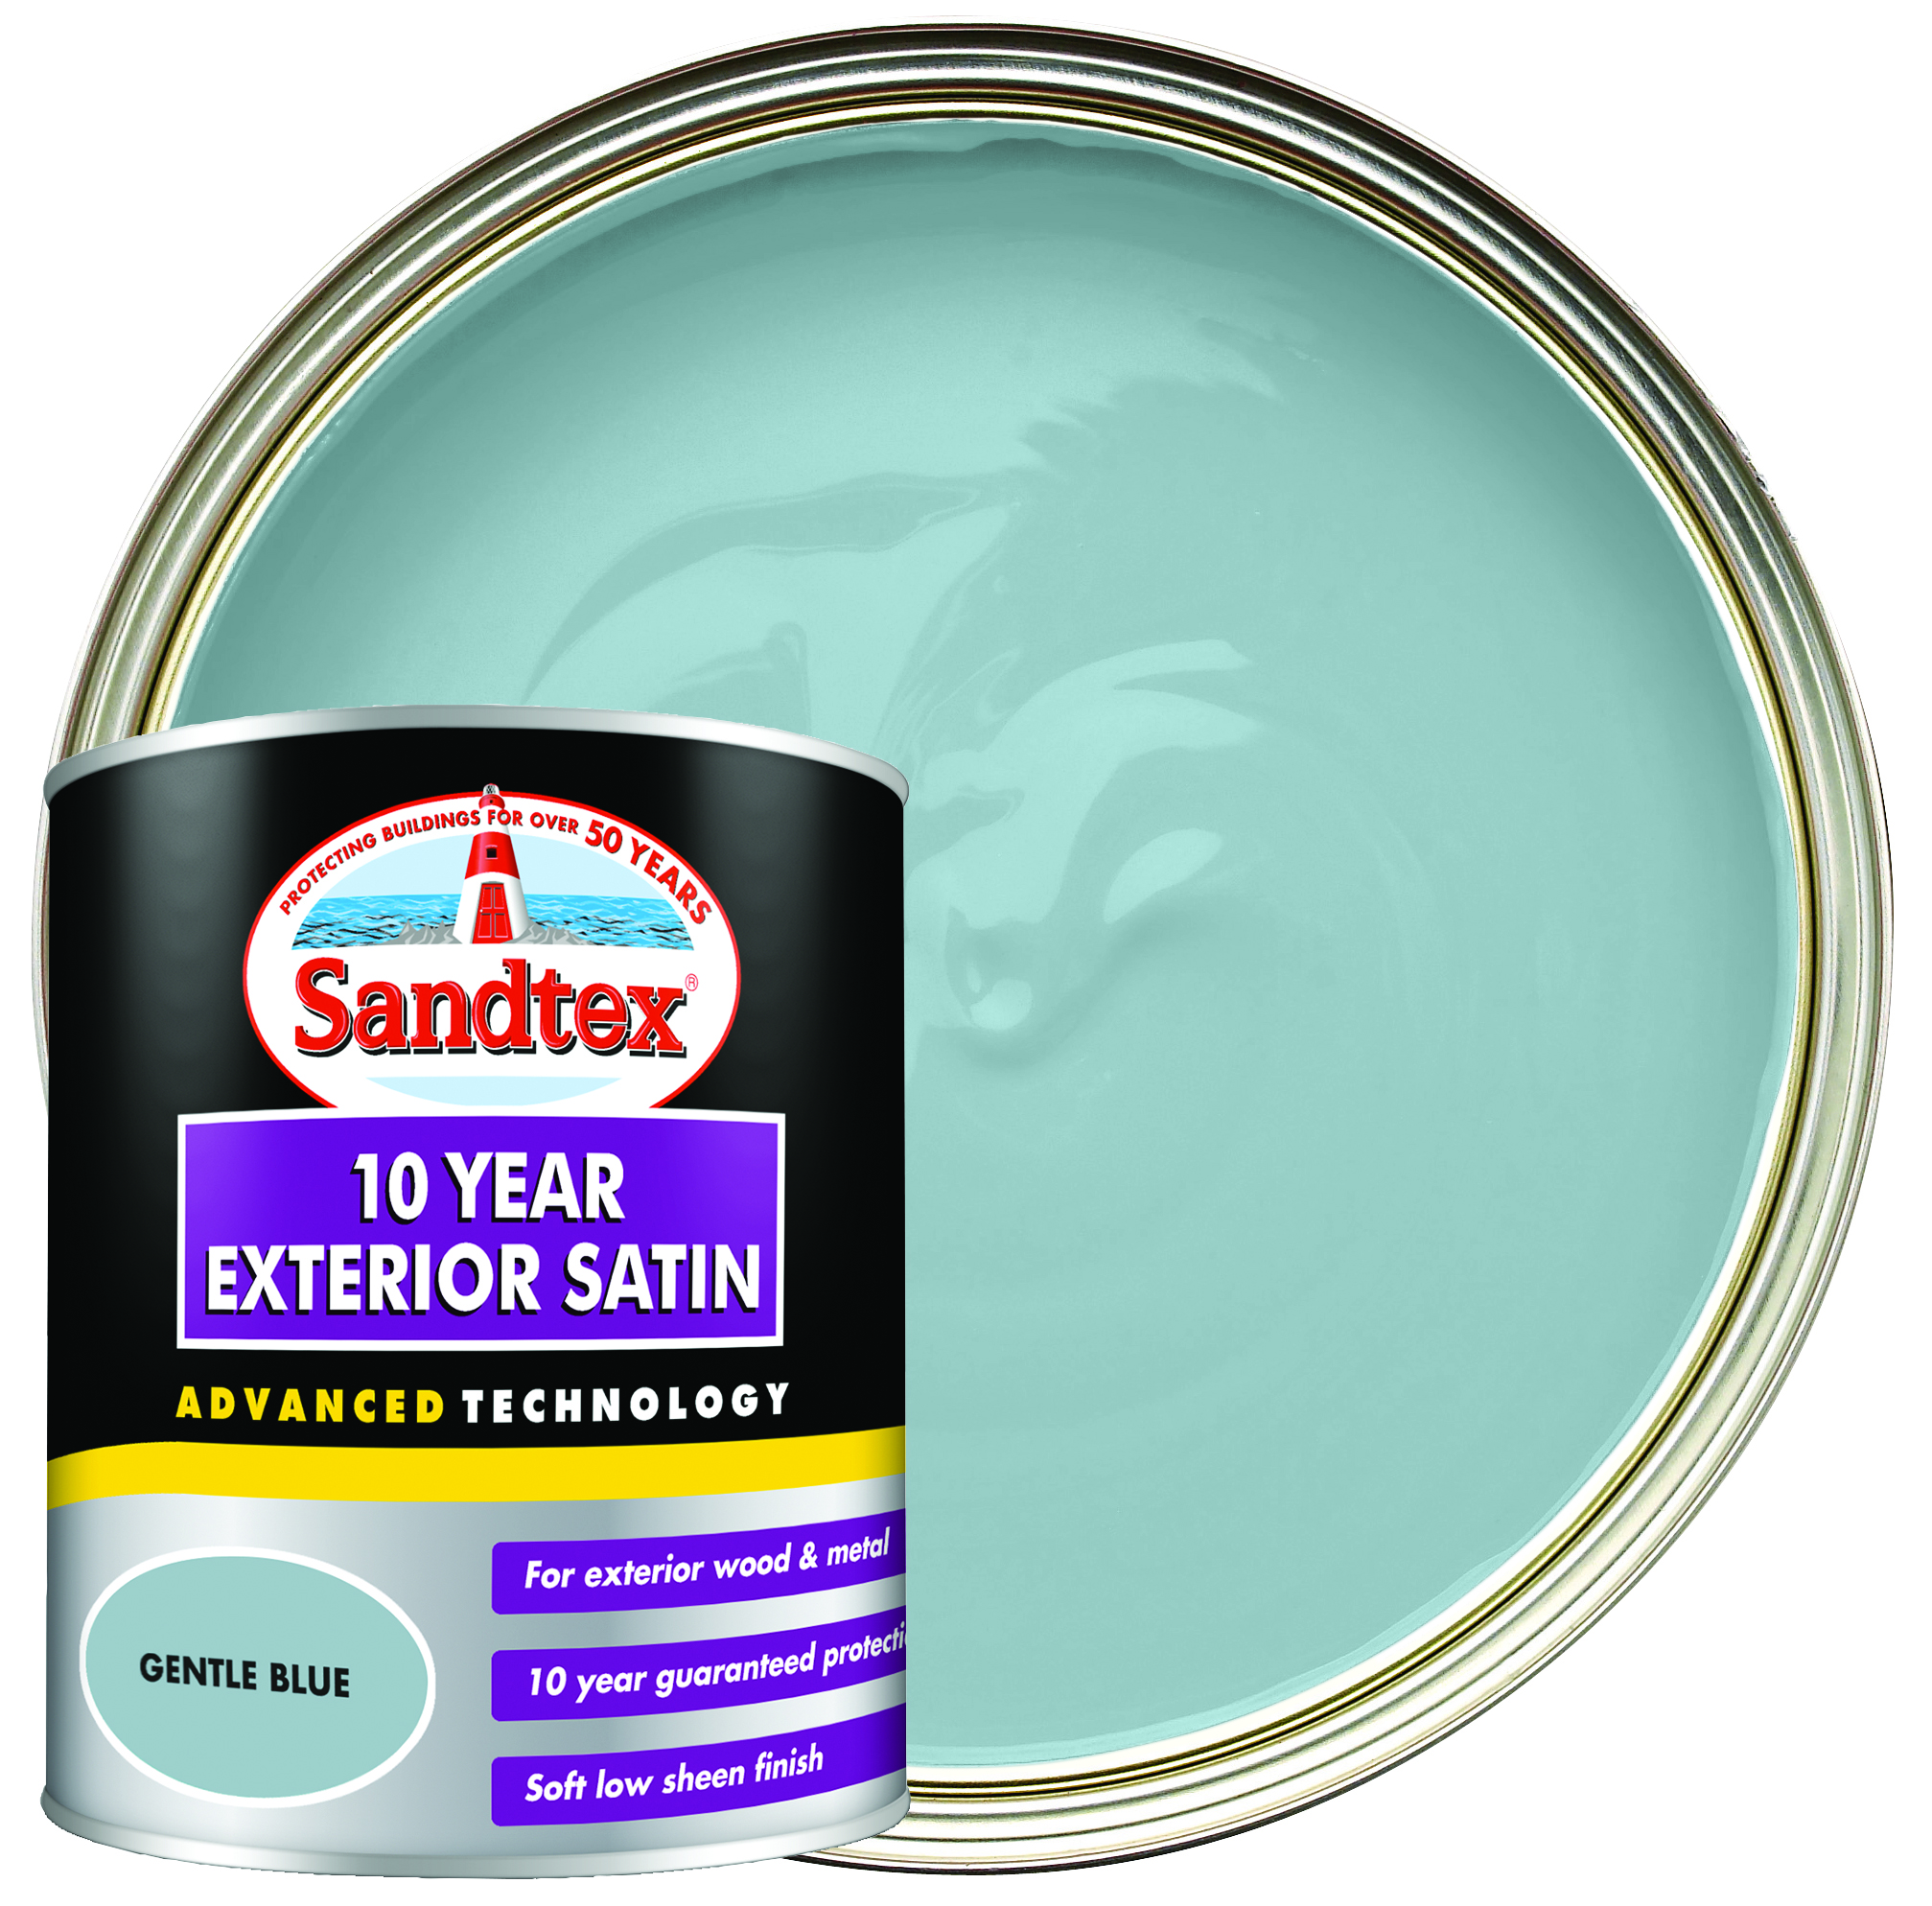 Sandtex 10 Year Exterior Satin Paint - Gentle Blue - 750ml